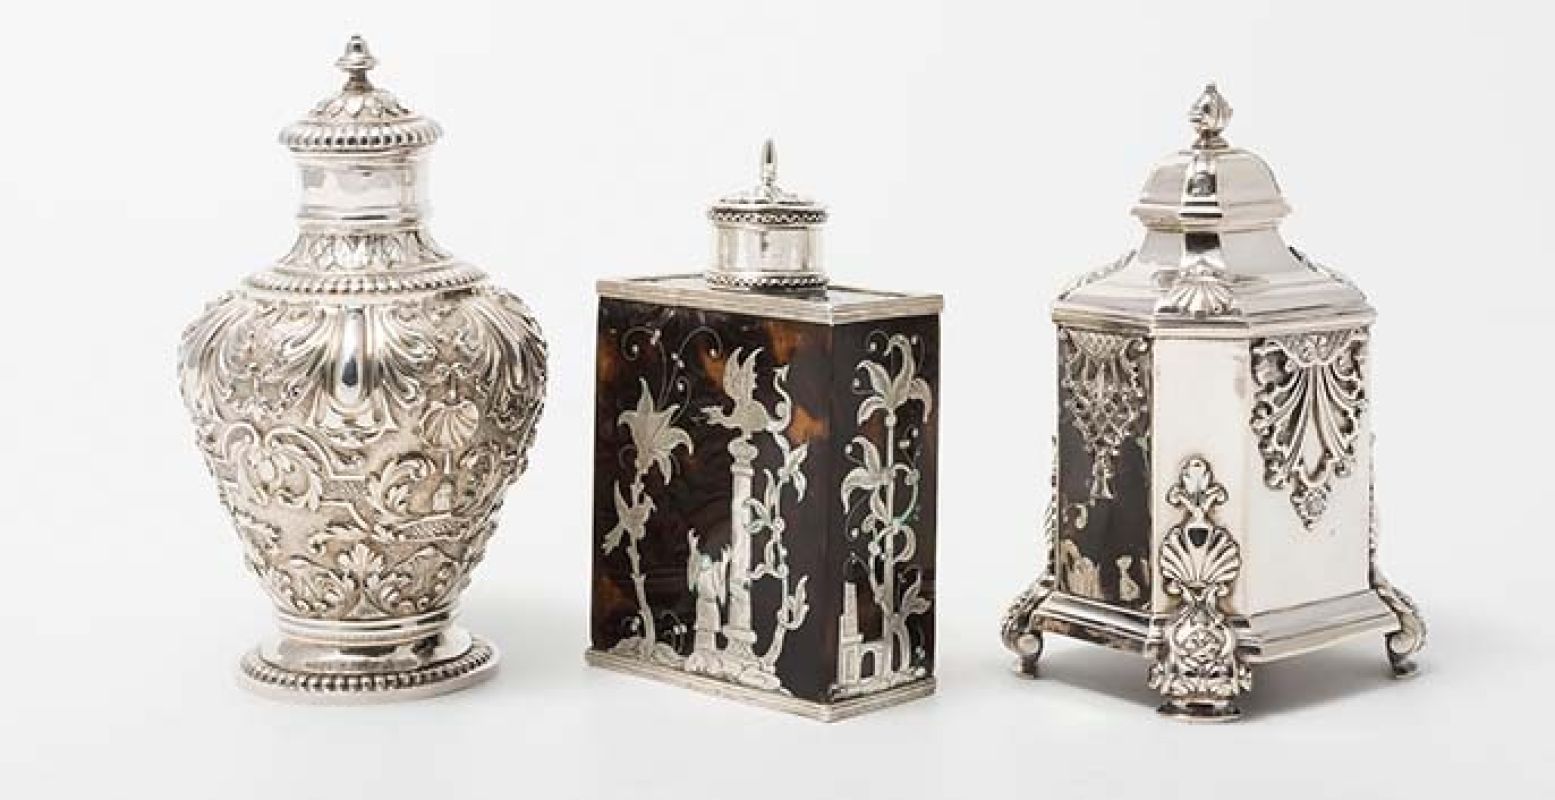 Drie zilveren theebussen (de middelste heeft elementen van schildpad), respectievelijk uit 1723, 1700 en 1754. Foto: Noordbrabants Museum